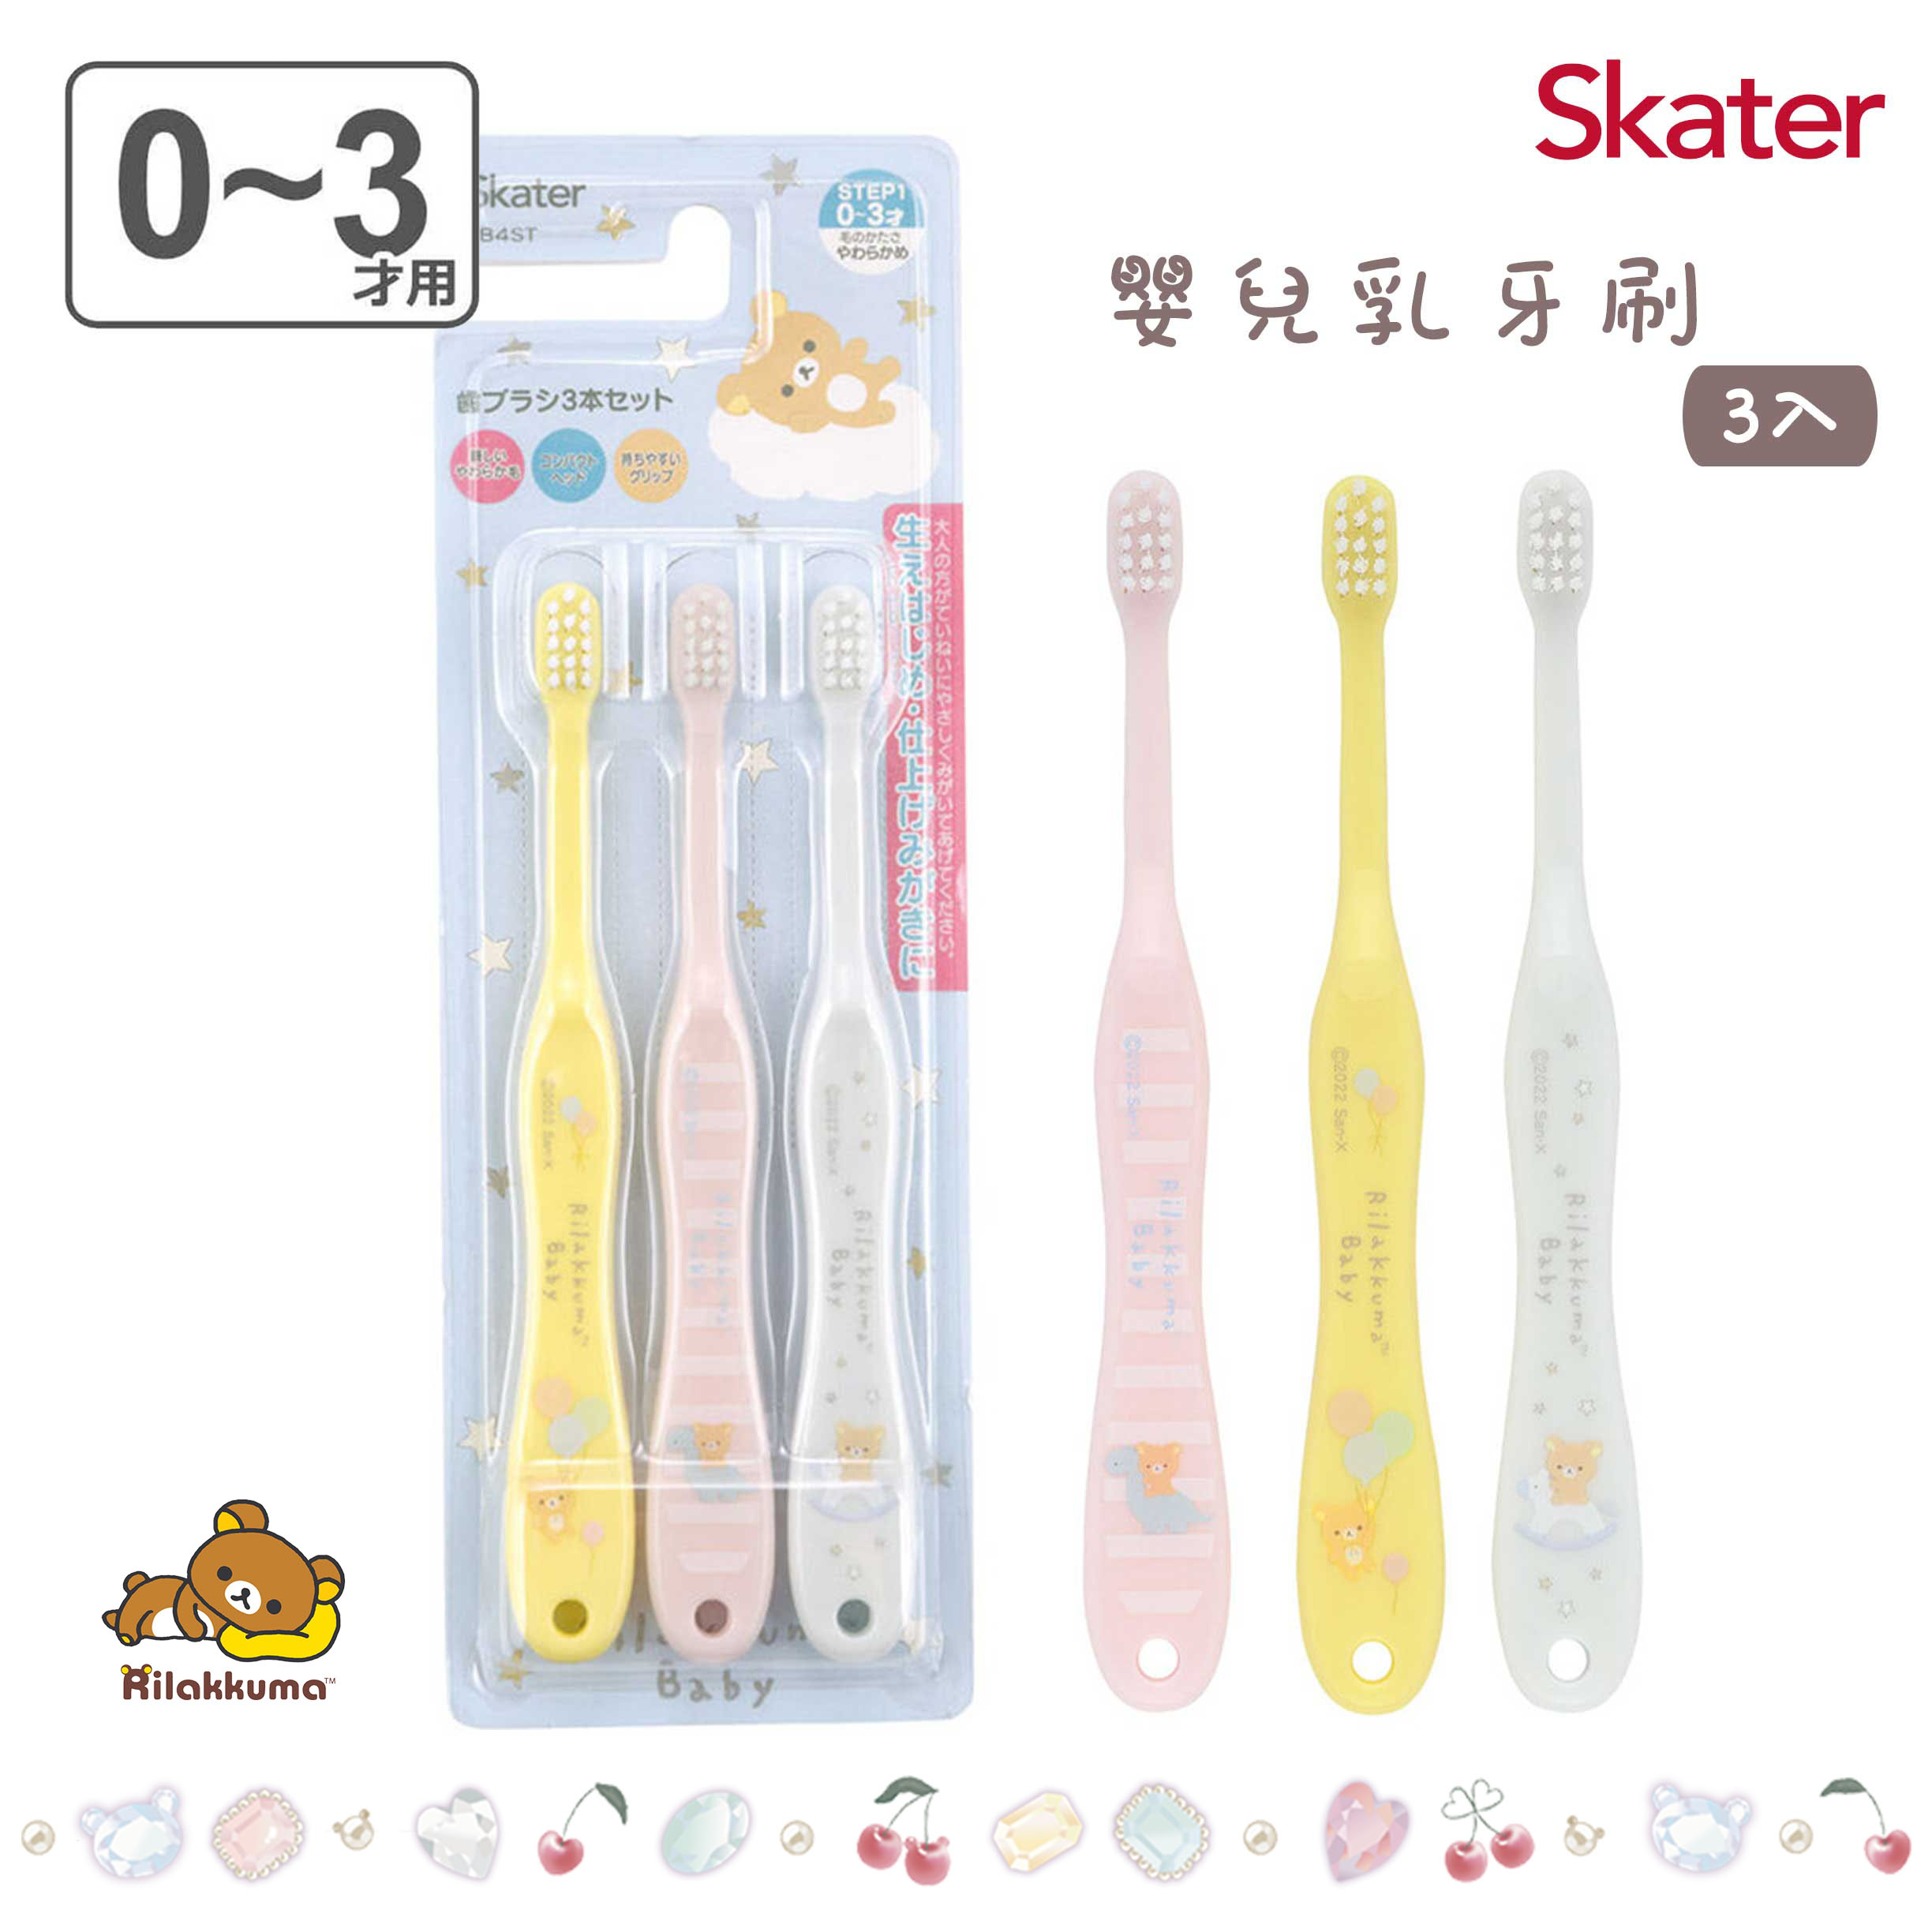 嬰兒乳牙刷 3入-拉拉熊 Rilakkuma san-x Skater 日本進口正版授權